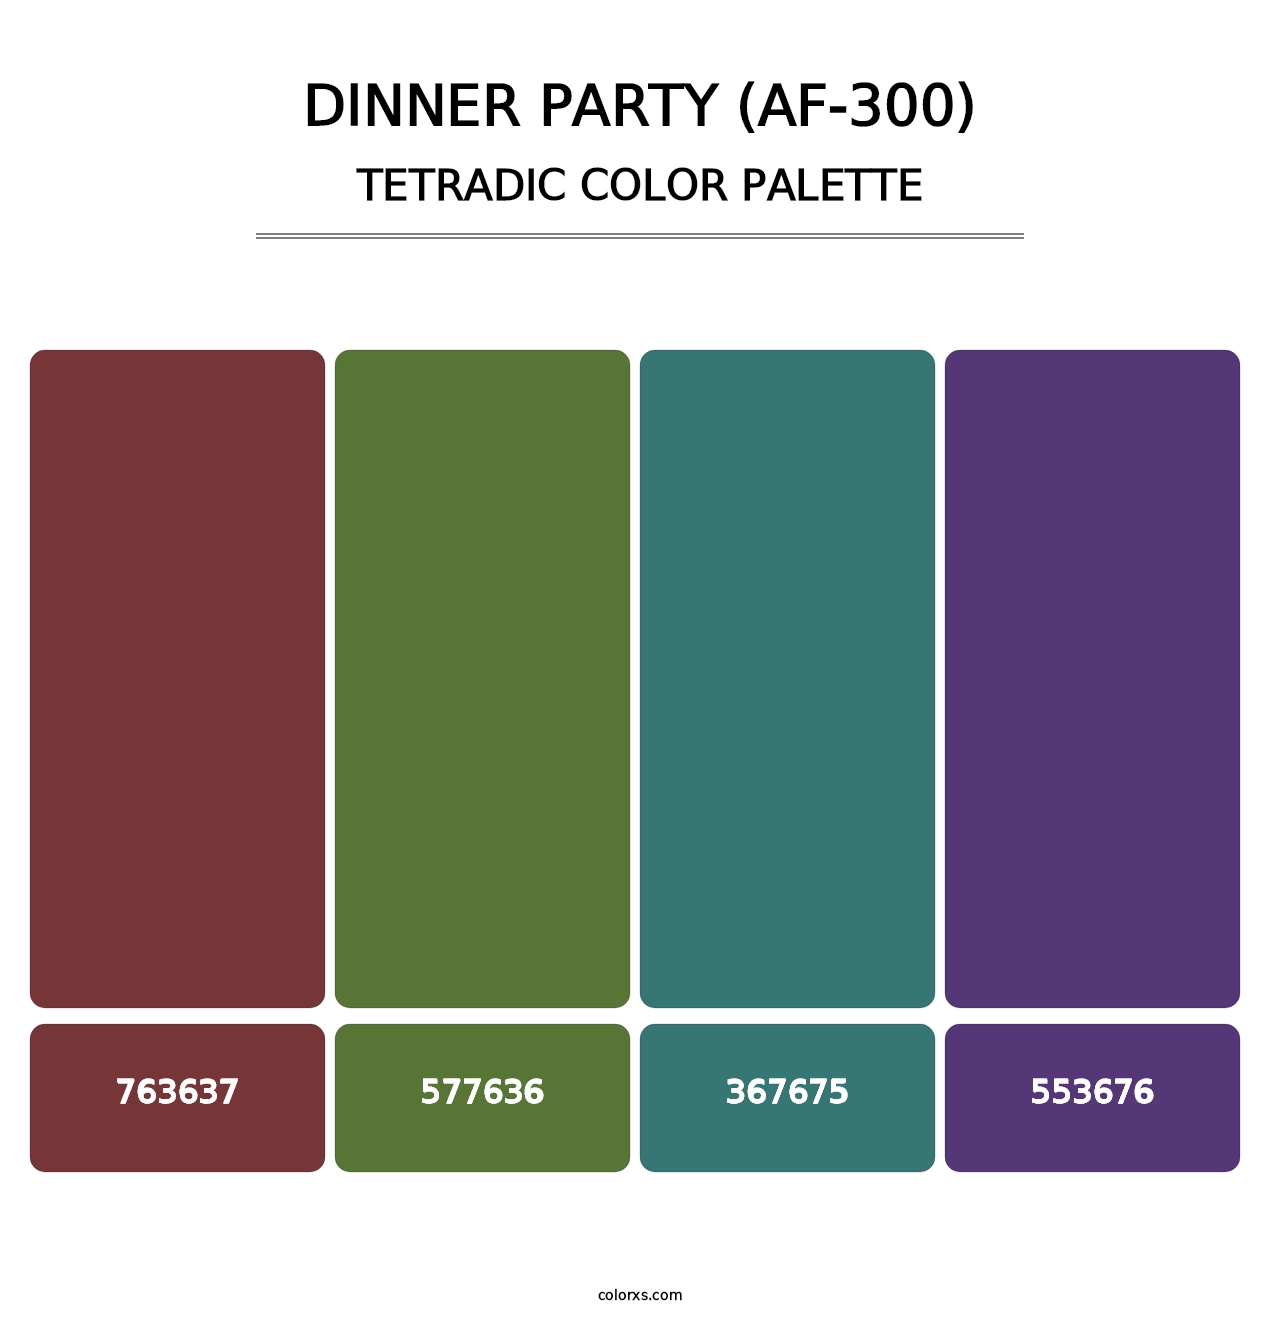 Dinner Party (AF-300) - Tetradic Color Palette